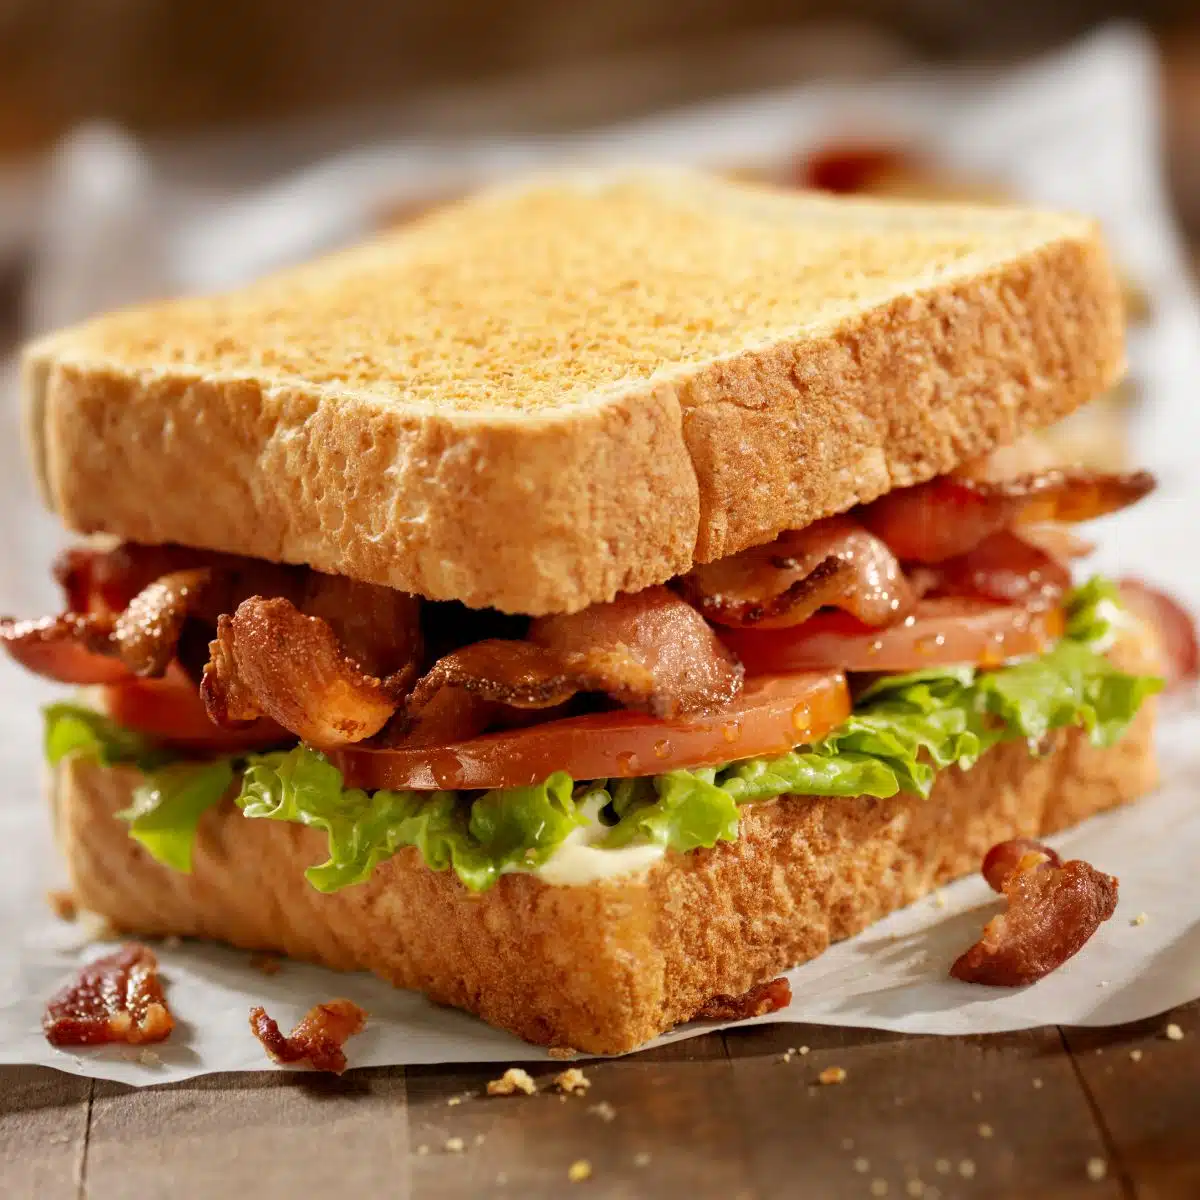 Square image showing a classic BLT sandwich.